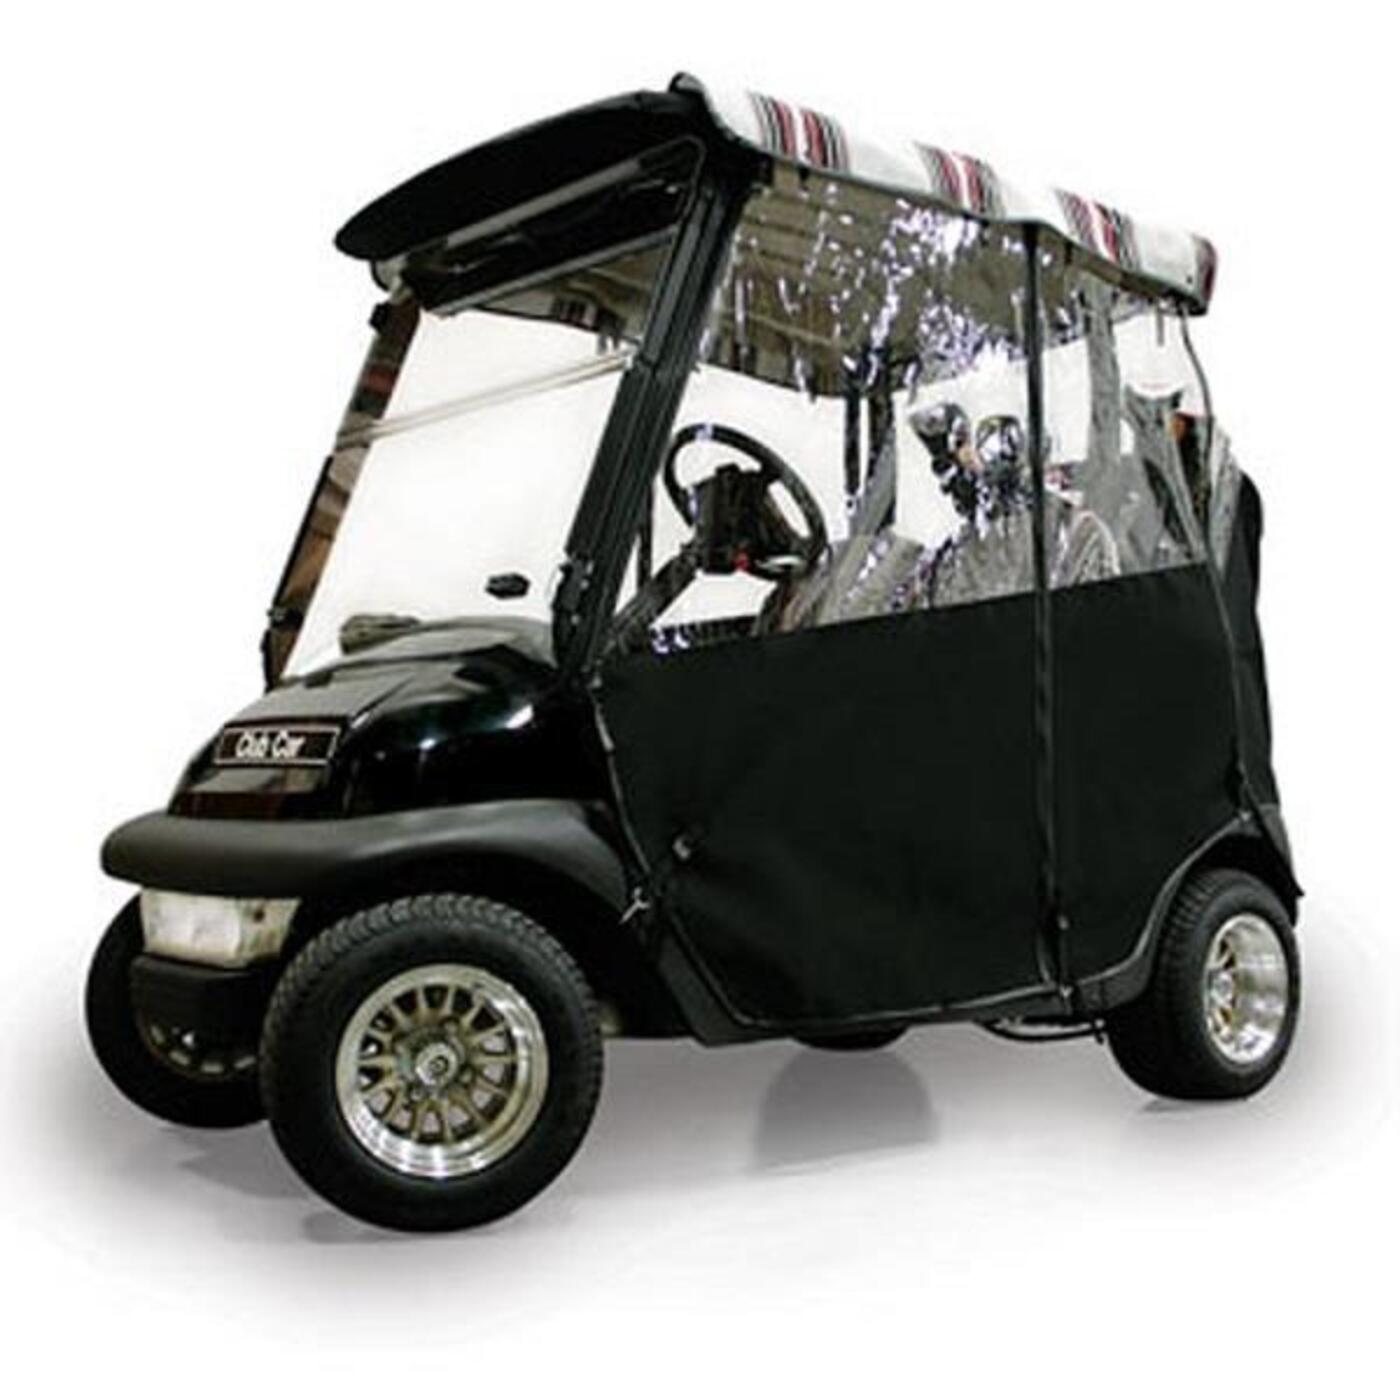 Black Sunbrella 3-Sided Custom Over-The-Top Enclosure - Fits Club Car Precedent 2004-Up